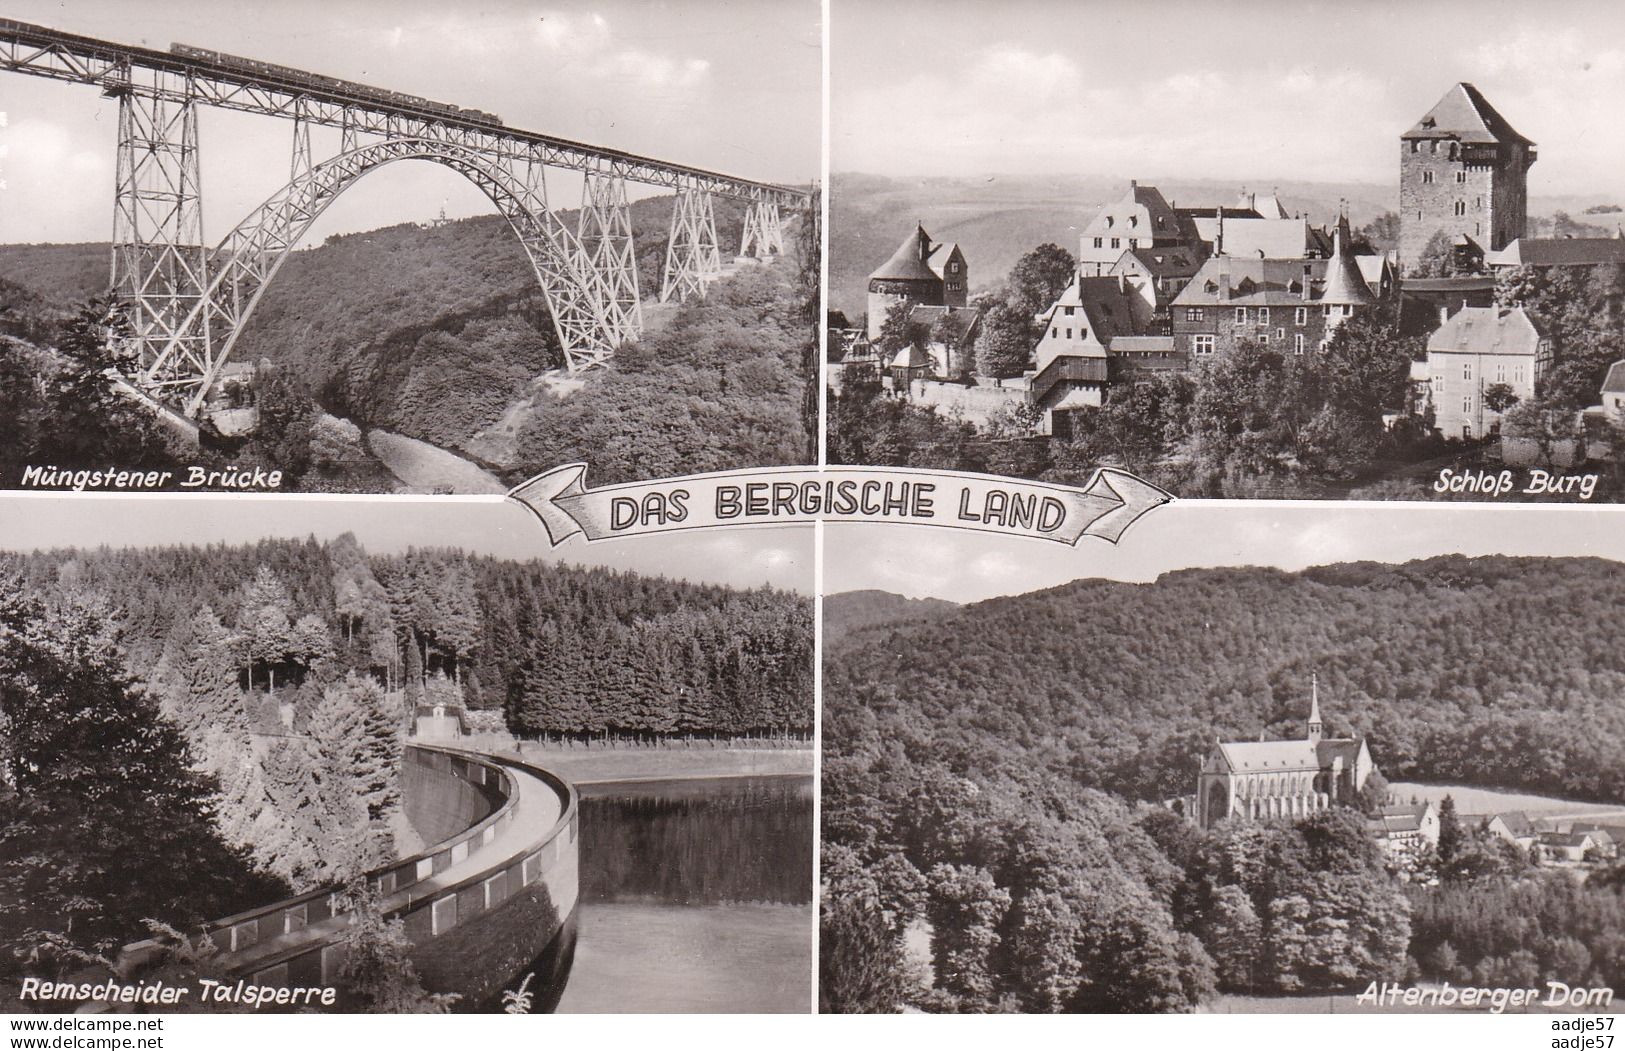 Das Bergische Land Mungstener Brucke - Bridges